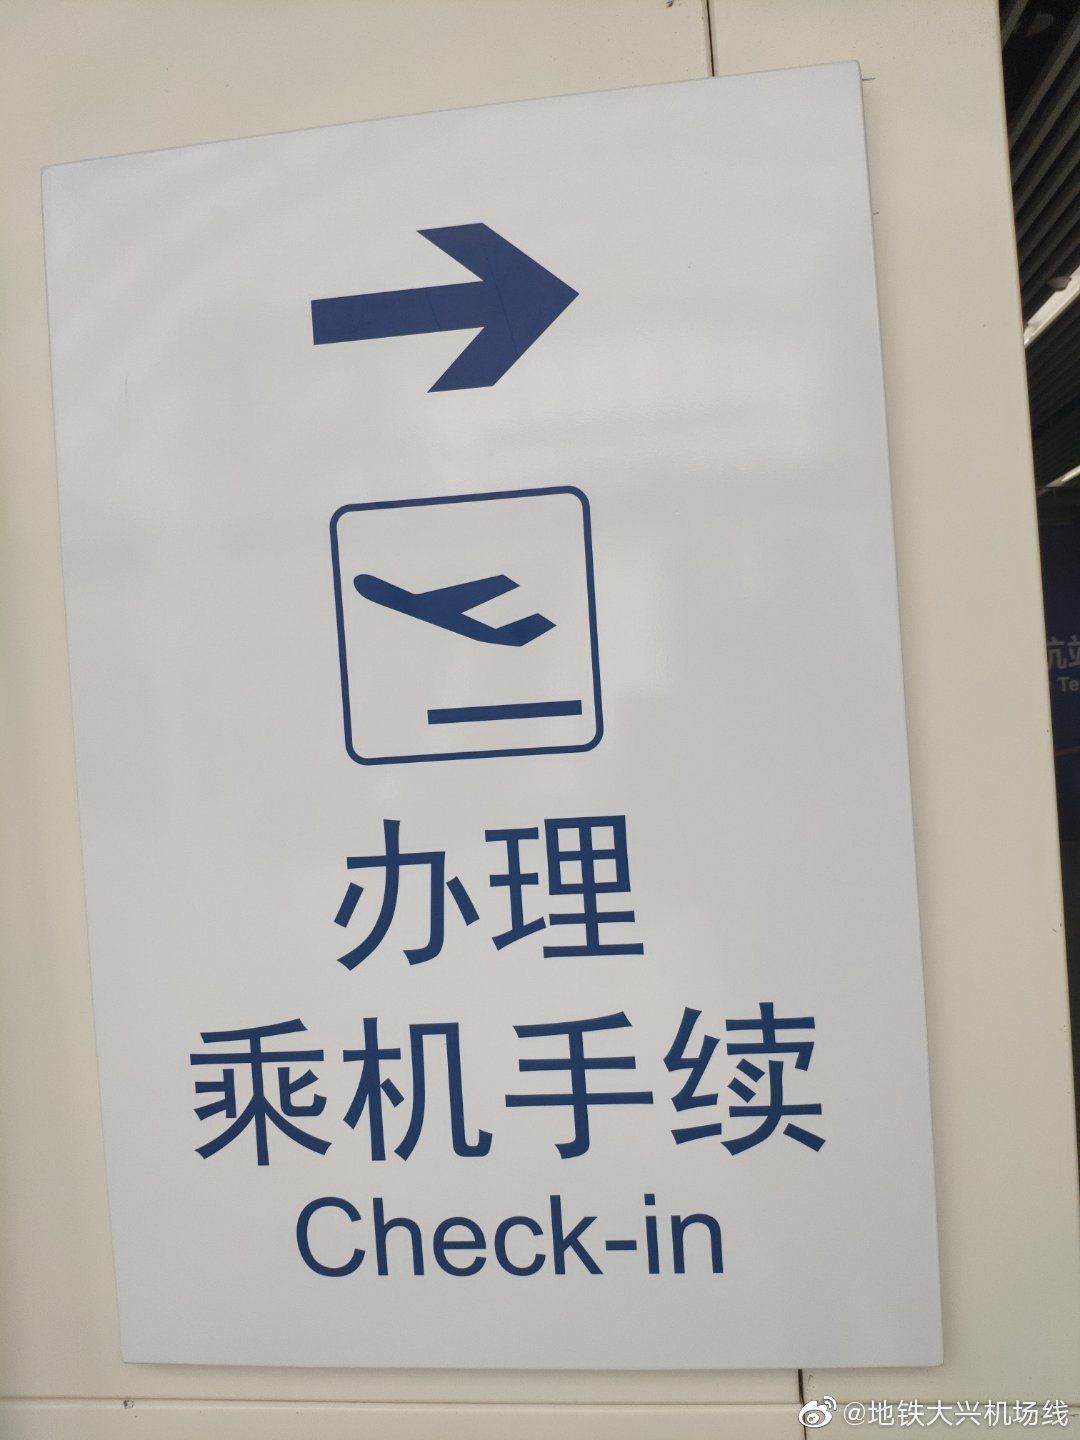 北京首个城市航站楼具备投用条件-海运拼箱价格